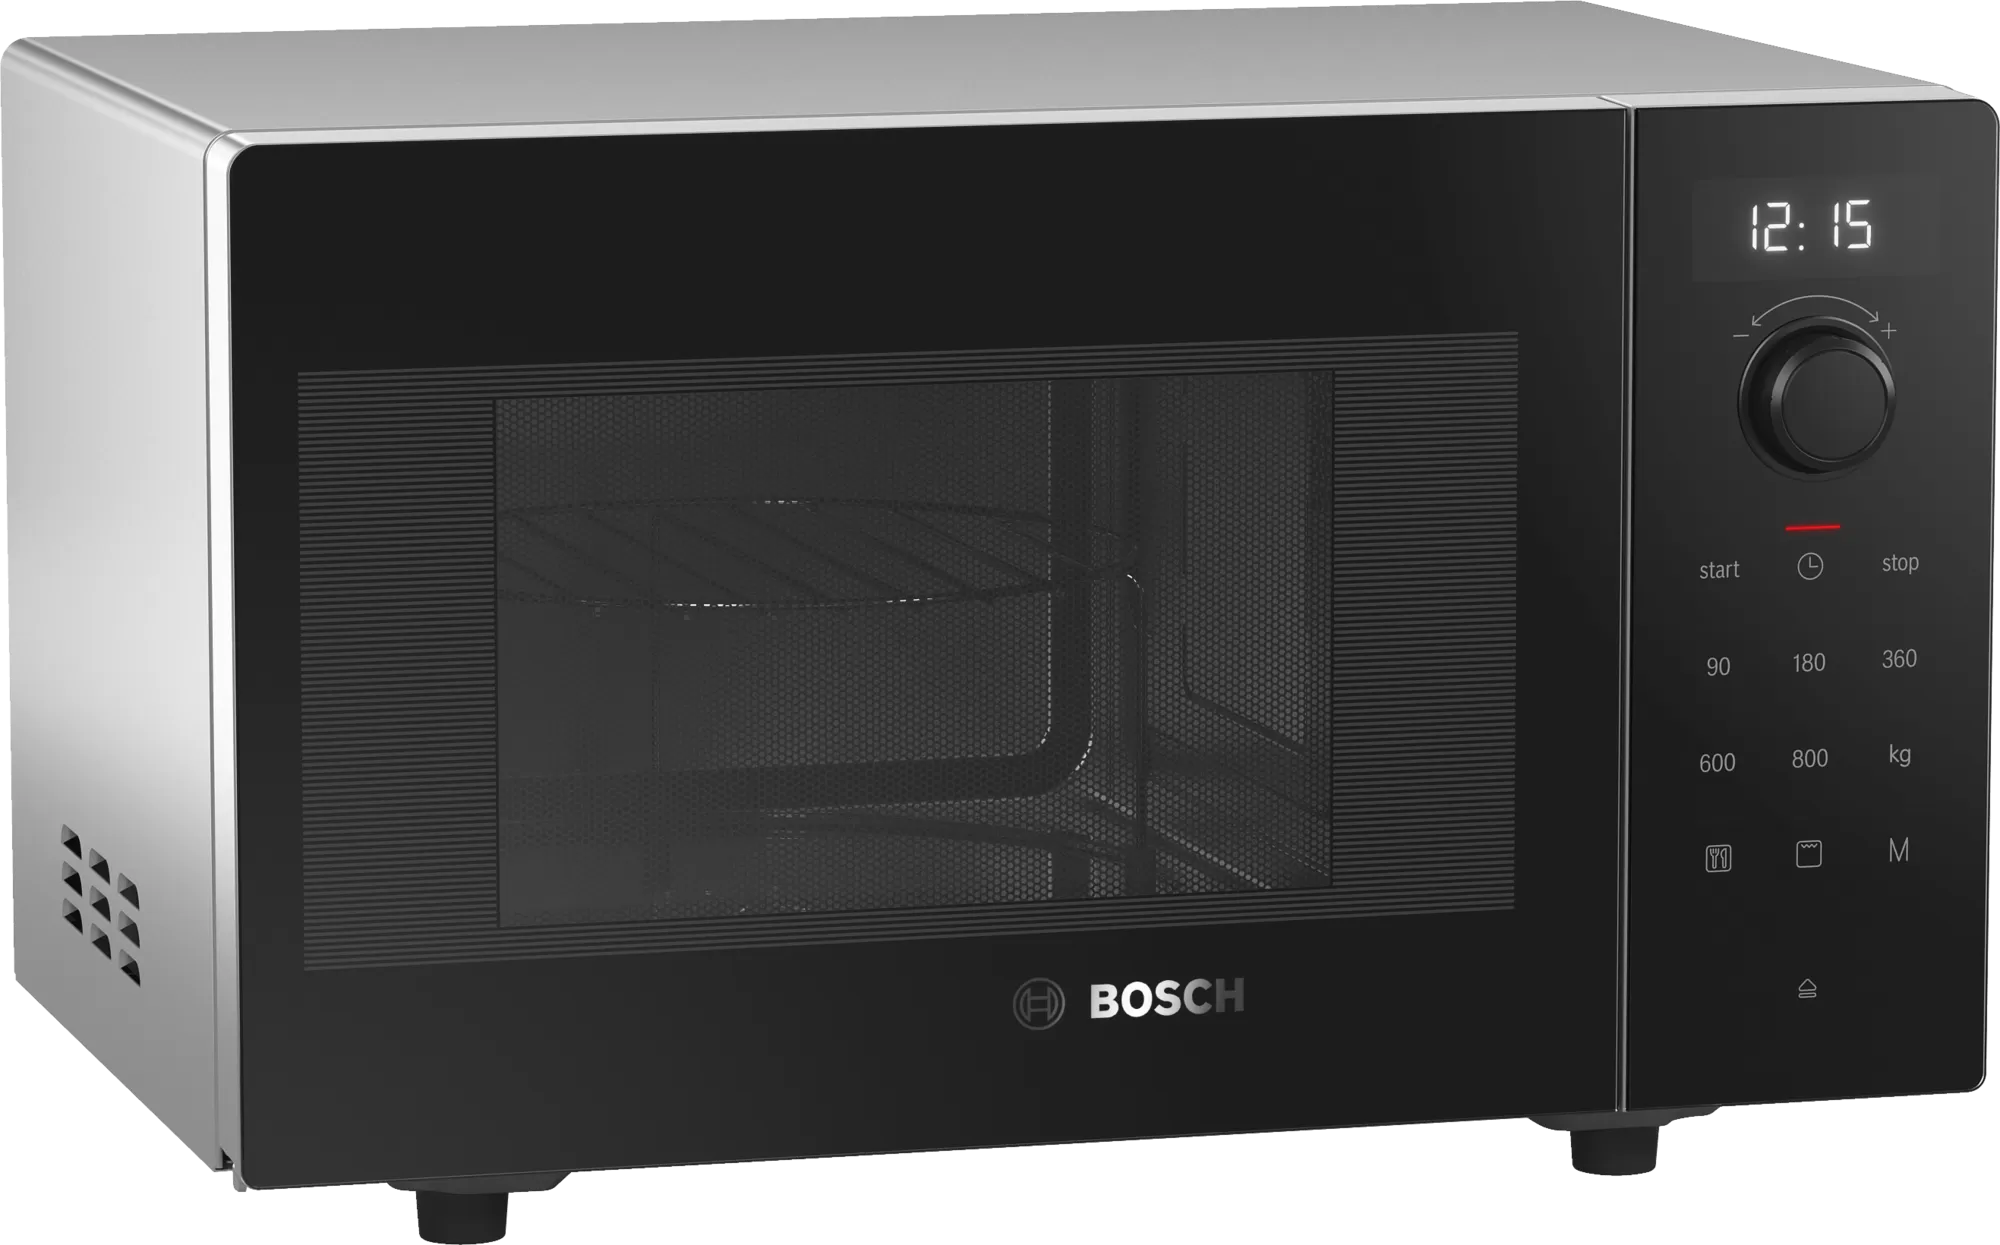 Микроволновая печь бош купить. Микроволновая печь Bosch ffm553mb0. СВЧ печь Bosch fem513mb0. Микроволновая печь бош 513. Микроволновая печь Bosch отдельностоящая.